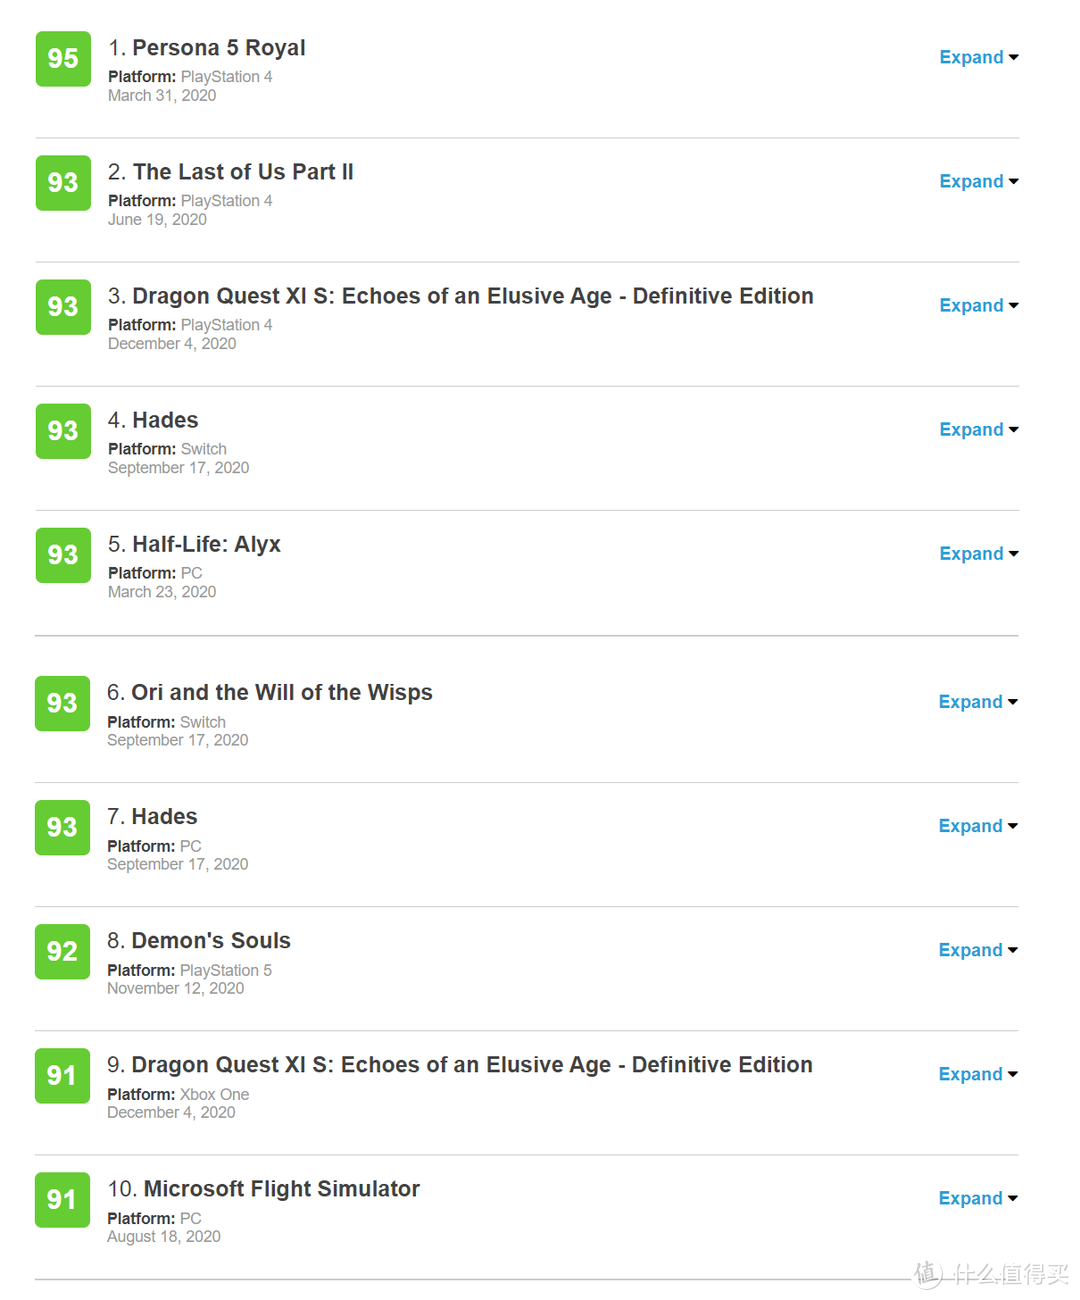 2020年 Metacritic 游戏排行榜上的 Top 10 你玩过几个？